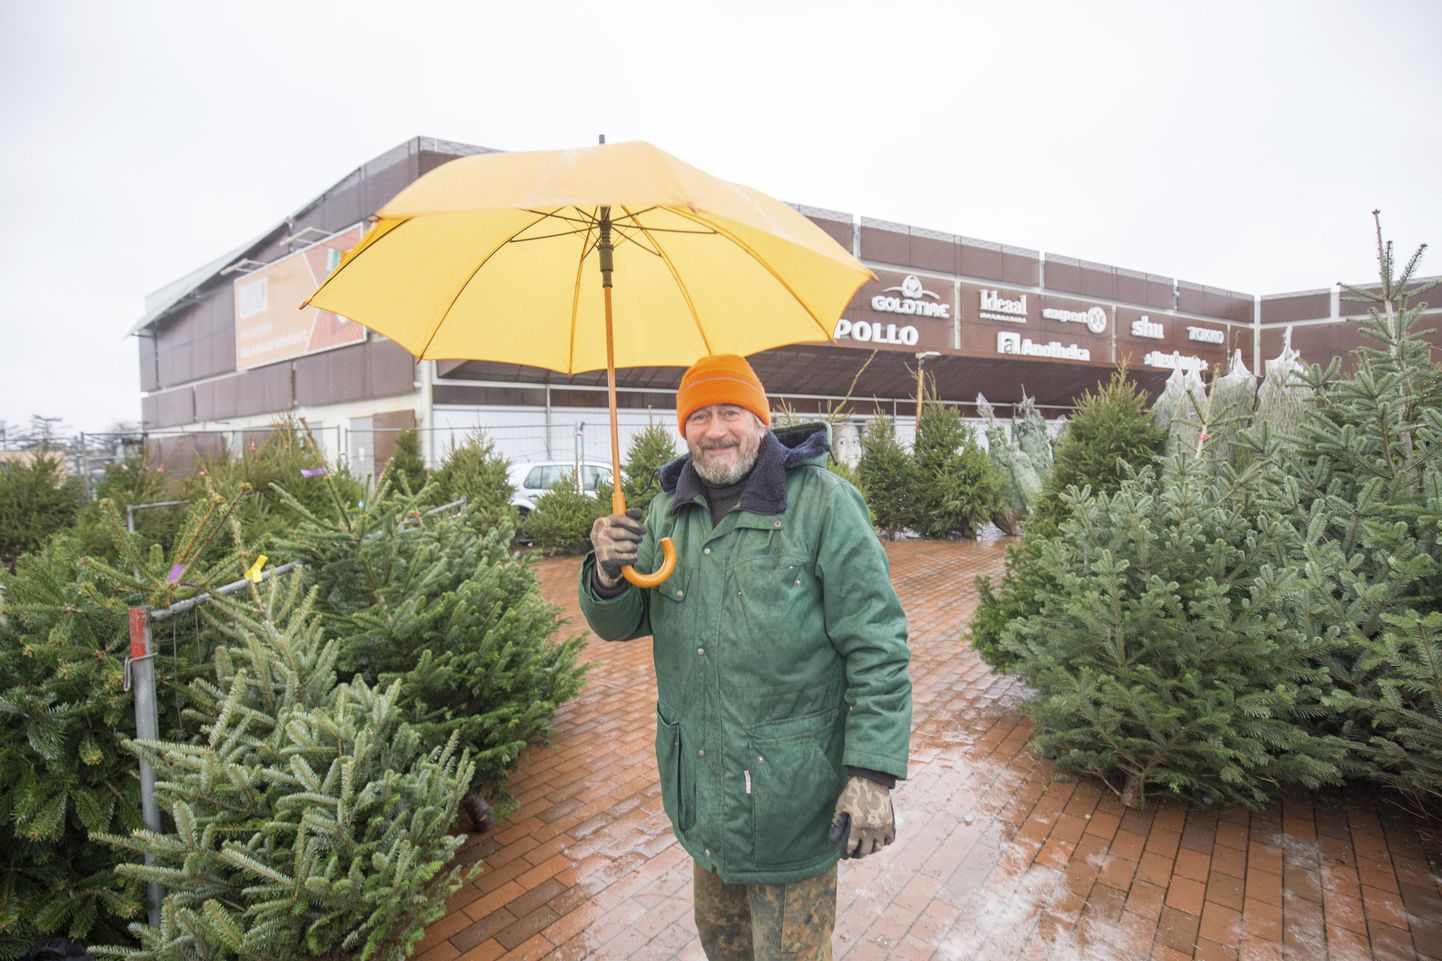 Uku keskuse ees vihmasajus jõulupuid müünud Endel Soosaar märkis, et viljandlaste seas on poupulaarseim harilik kuusk.